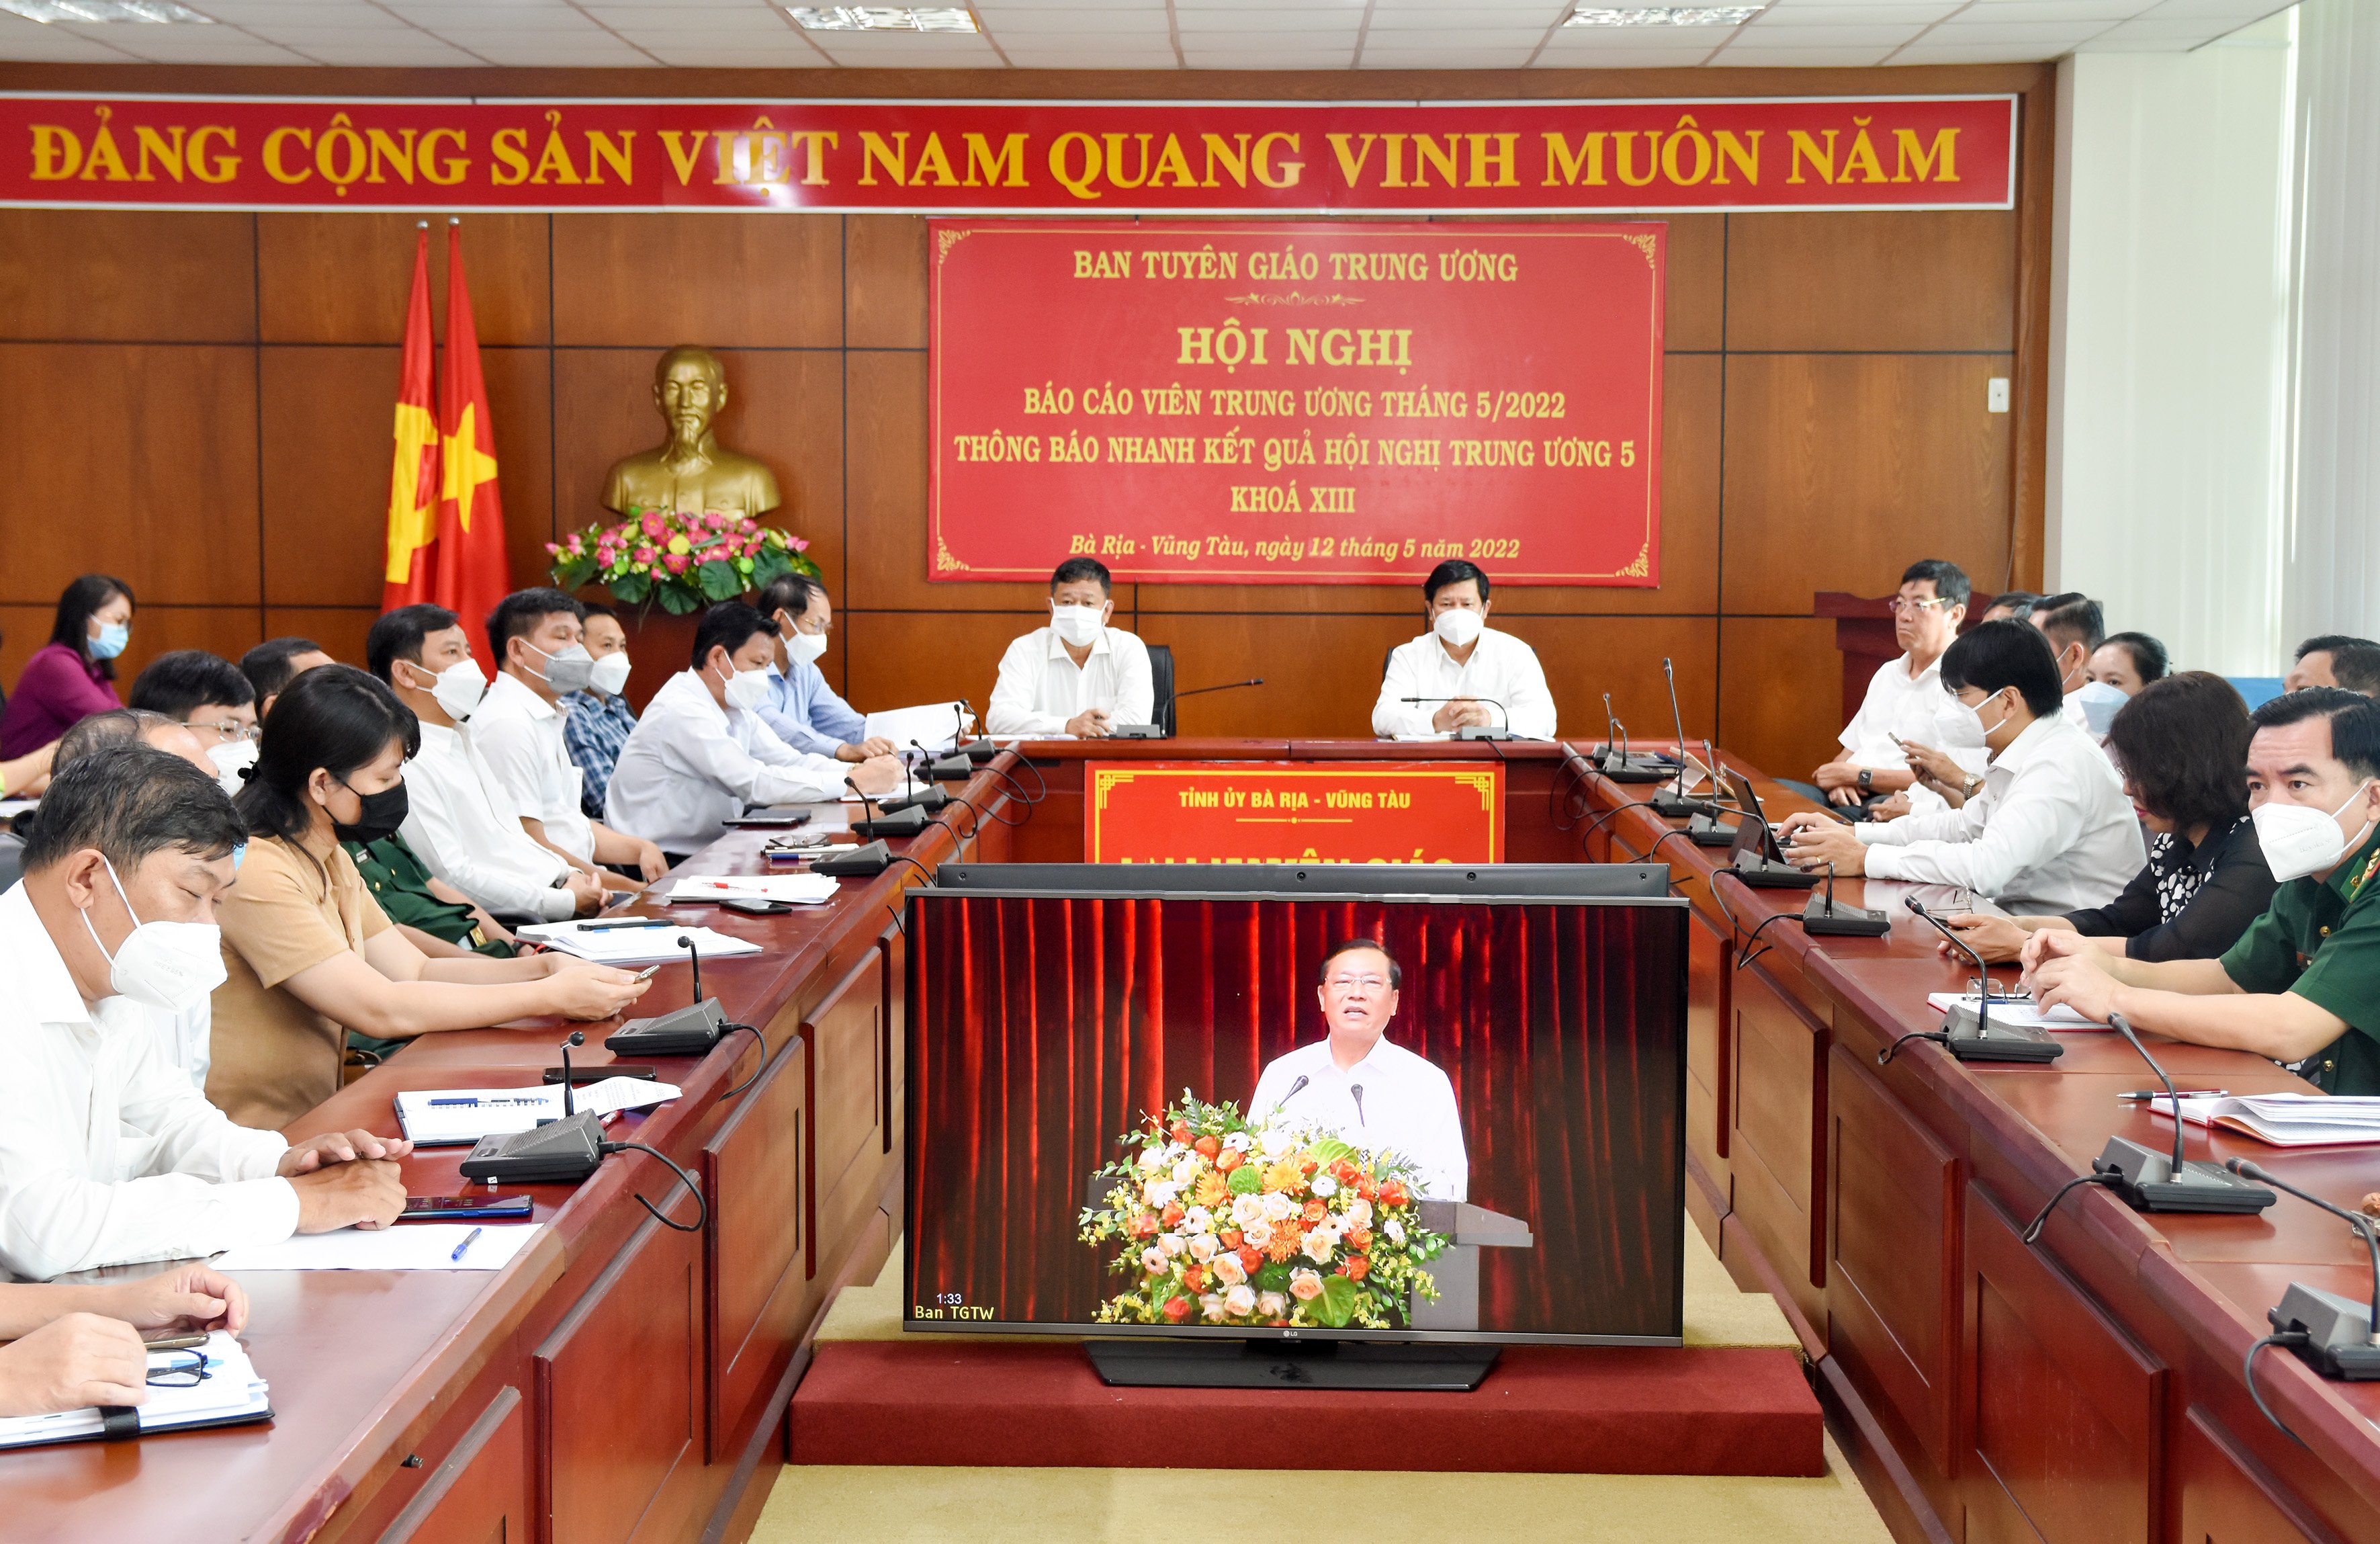 Ông Nguyễn Văn Xinh, ông Lê Văn Lâm và các đại biểu tham dự hội nghị tại điểm cầu tỉnh Bà Rịa-Vũng Tàu.